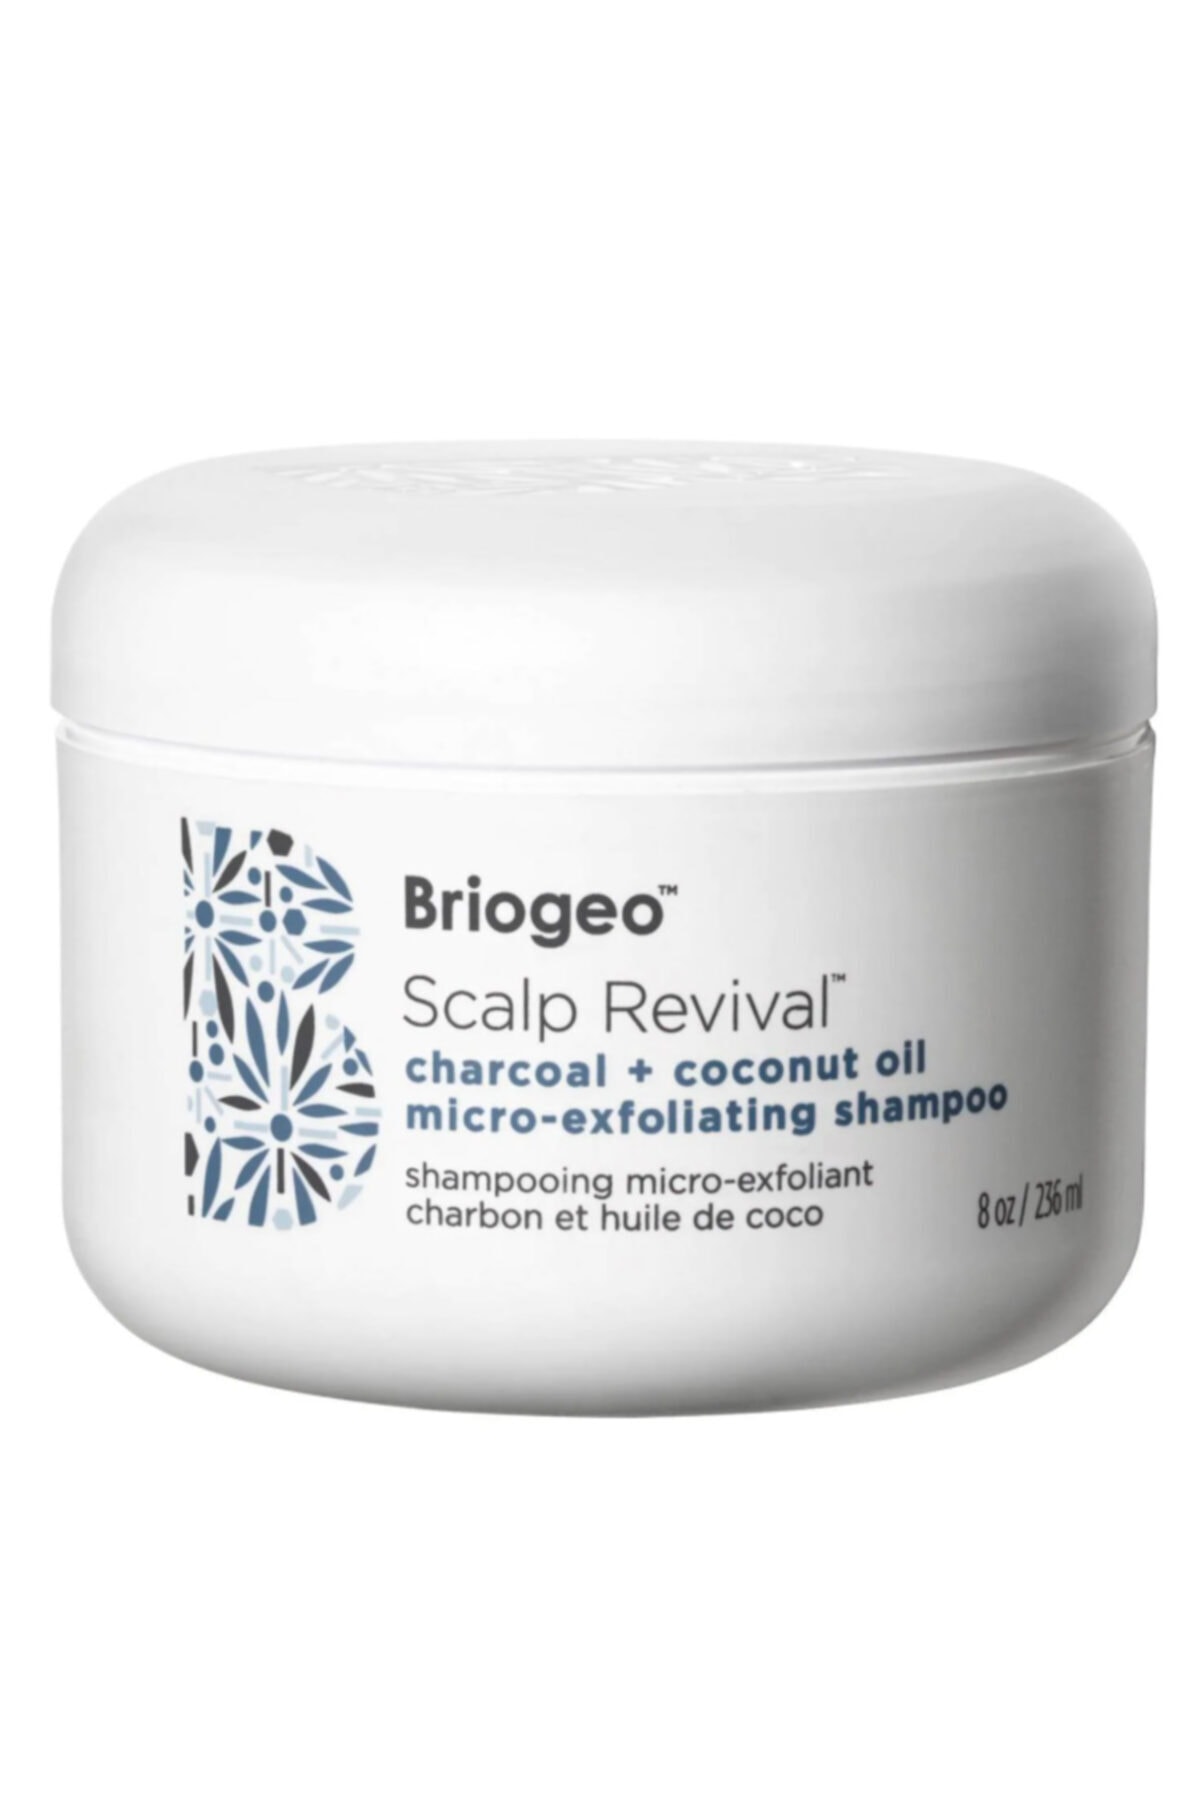 briogeo Scalp Revival Charcoal